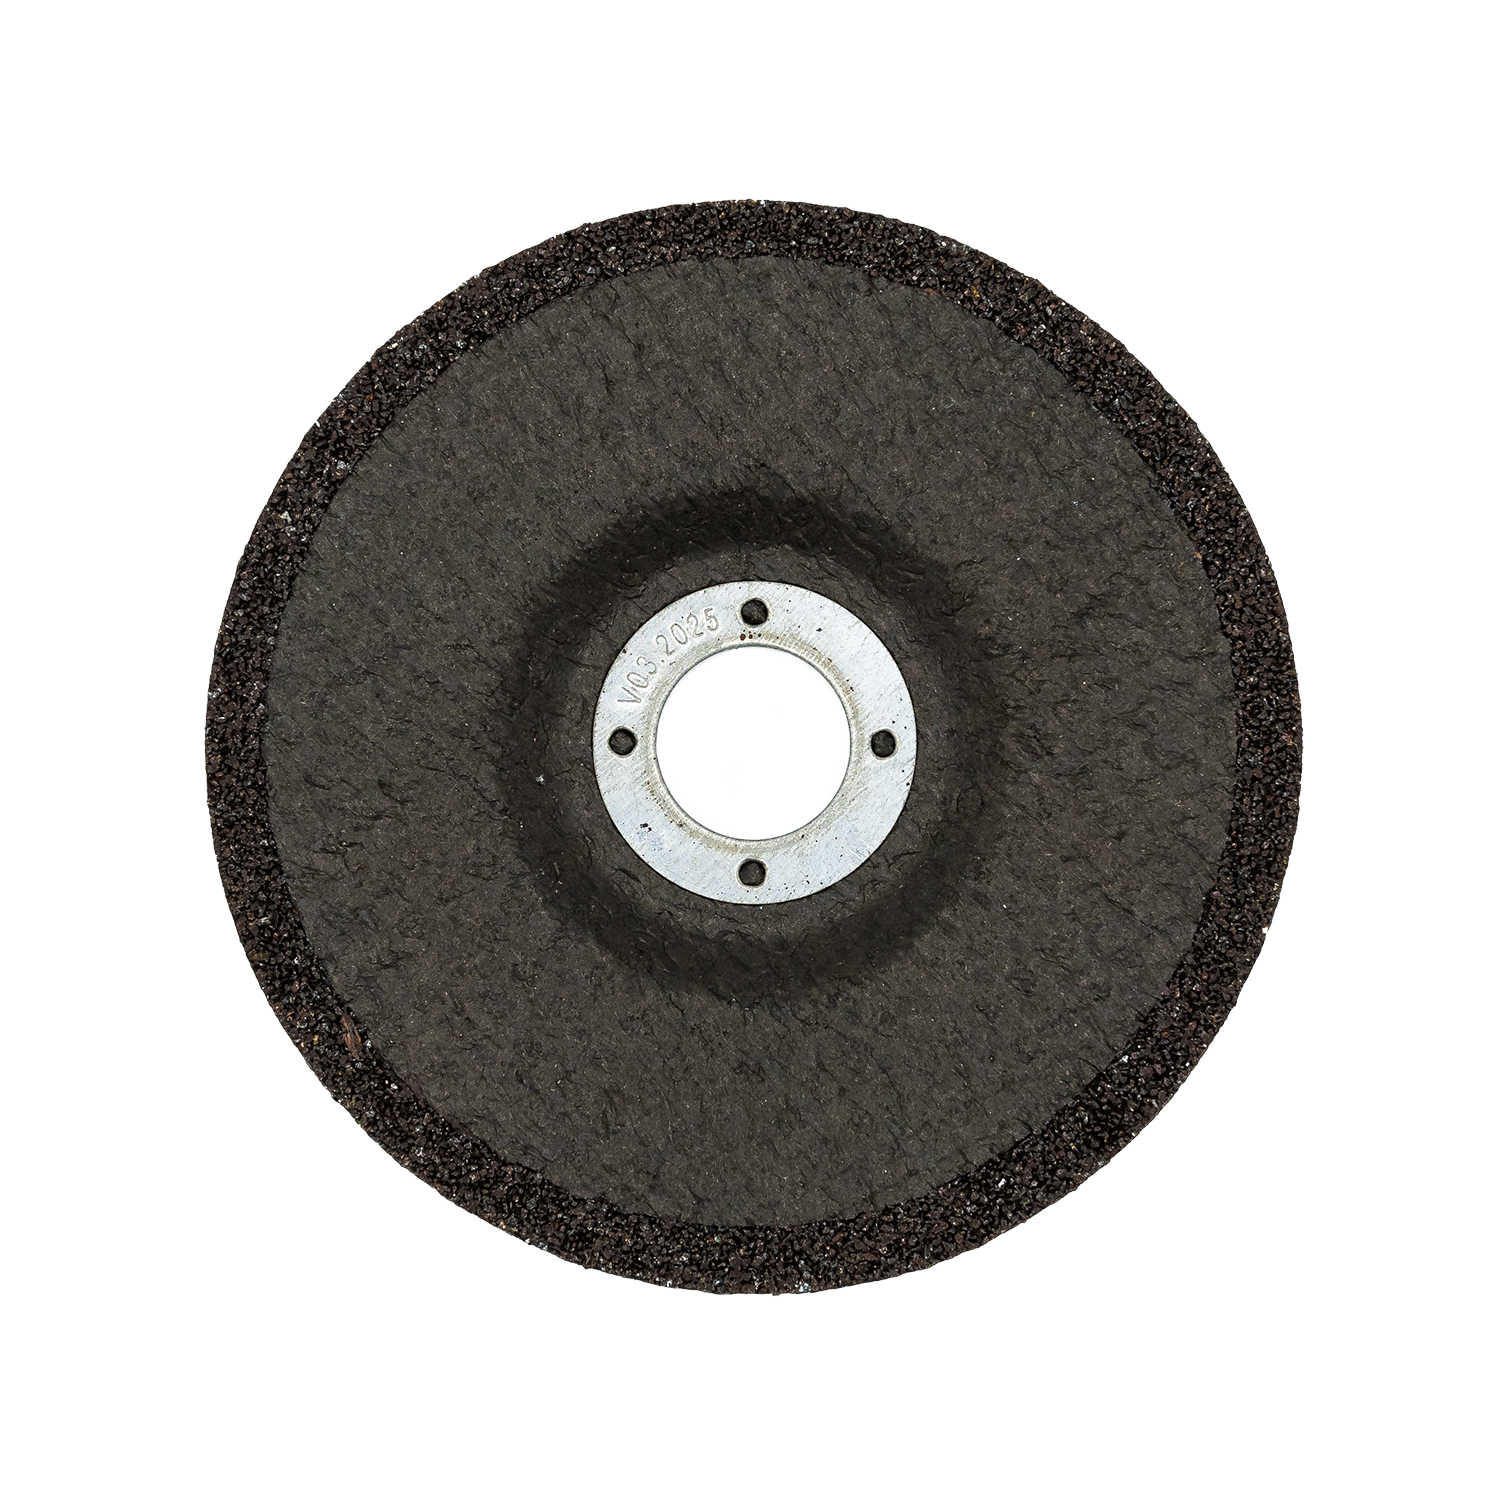 Grinding Disc Schleifscheibe für Stein 125mm